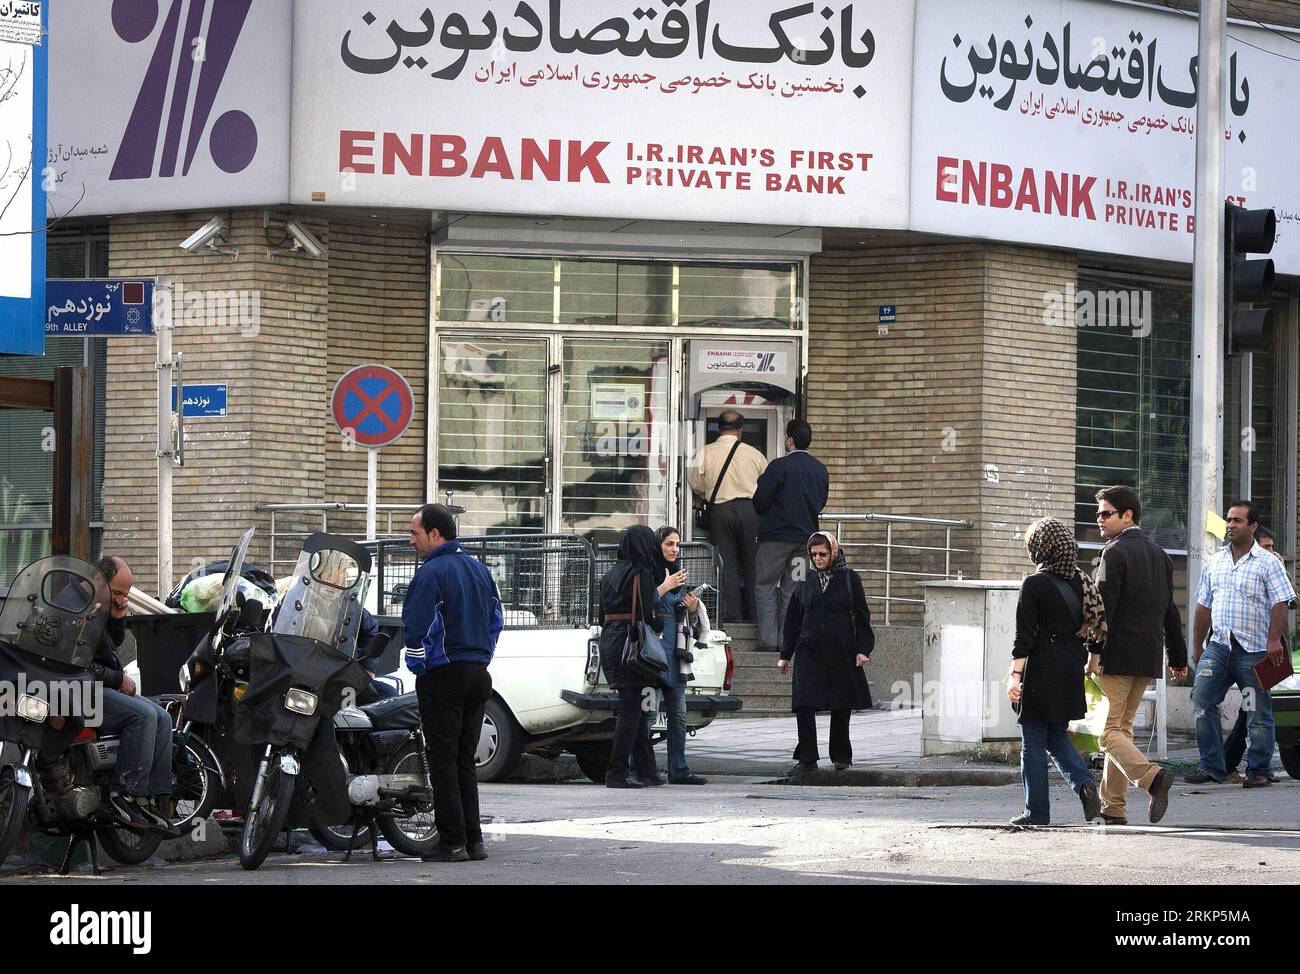 Bildnummer : 57898092 Datum : 15.04.2012 Copyright : imago/Xinhua (120415)-- TÉHÉRAN, 15 avril 2012 (Xinhua) -- des gens sont vus devant une banque dans le nord de Téhéran, Iran, 15 avril 2012. La Banque centrale iranienne a annoncé dans une déclaration récente que 3 cartes ATM ont été piratées, et a appelé tous les propriétaires de cartes bancaires à changer les mots de passe de leurs cartes. (Xinhua/Ahmad Halabisaz) IRAN-TEHRAN-ATM CARD-HACKED PUBLICATIONxNOTxINxCHN Wirtschaft Bank Geldautomat xbs x0x 2012 quer 57898092 Date 15 04 2012 Copyright Imago XINHUA TÉHÉRAN avril 15 2012 célébrités XINHUA sont des lacs devant une banque Banque D'Images